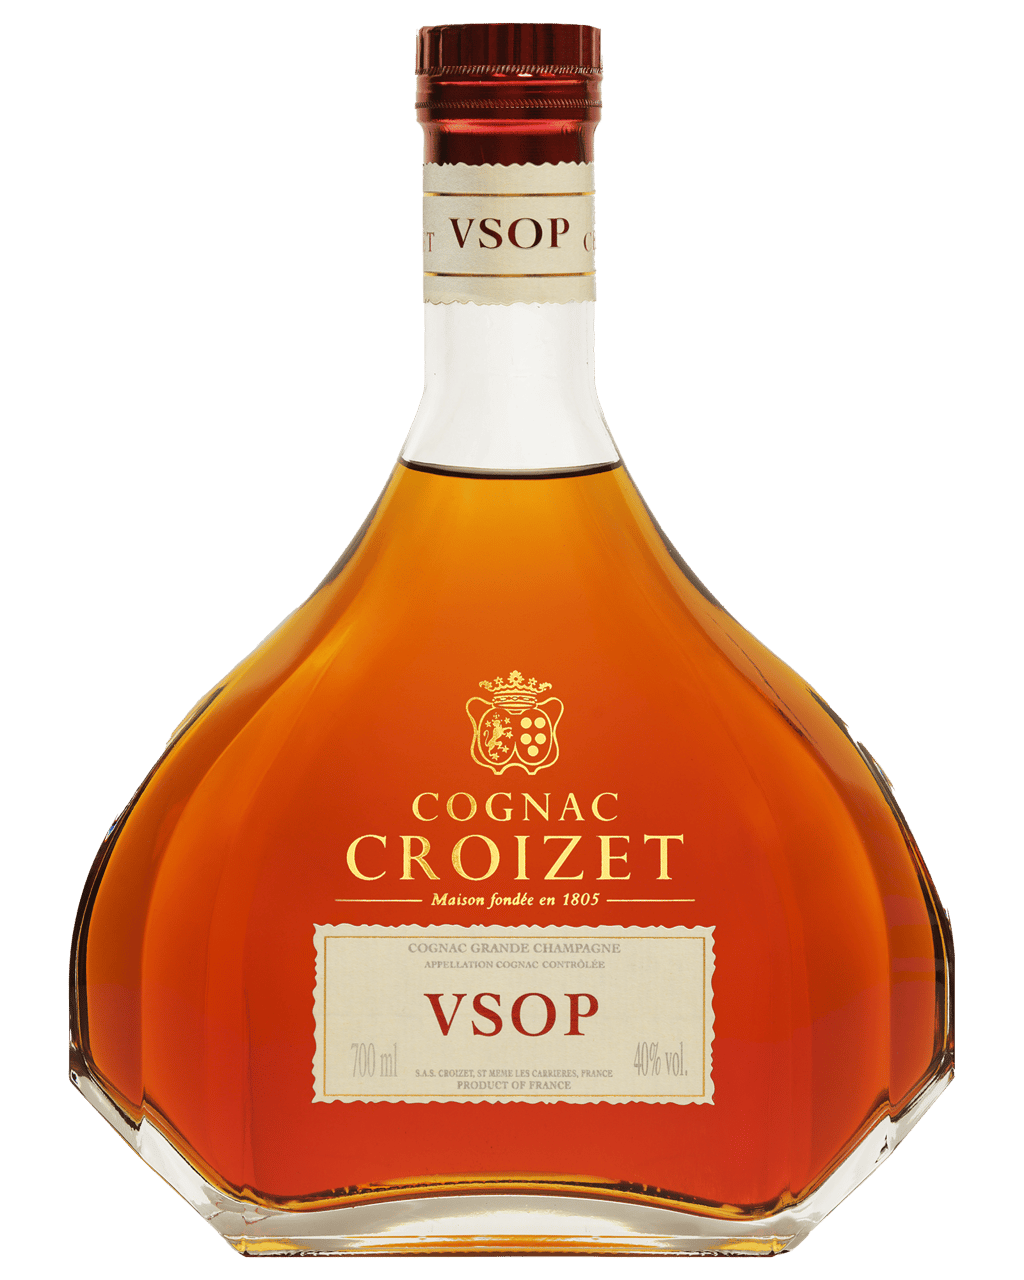 Cognac Croizet VSOP Gold Cognac 700mL Dan Murphys Buy Wine